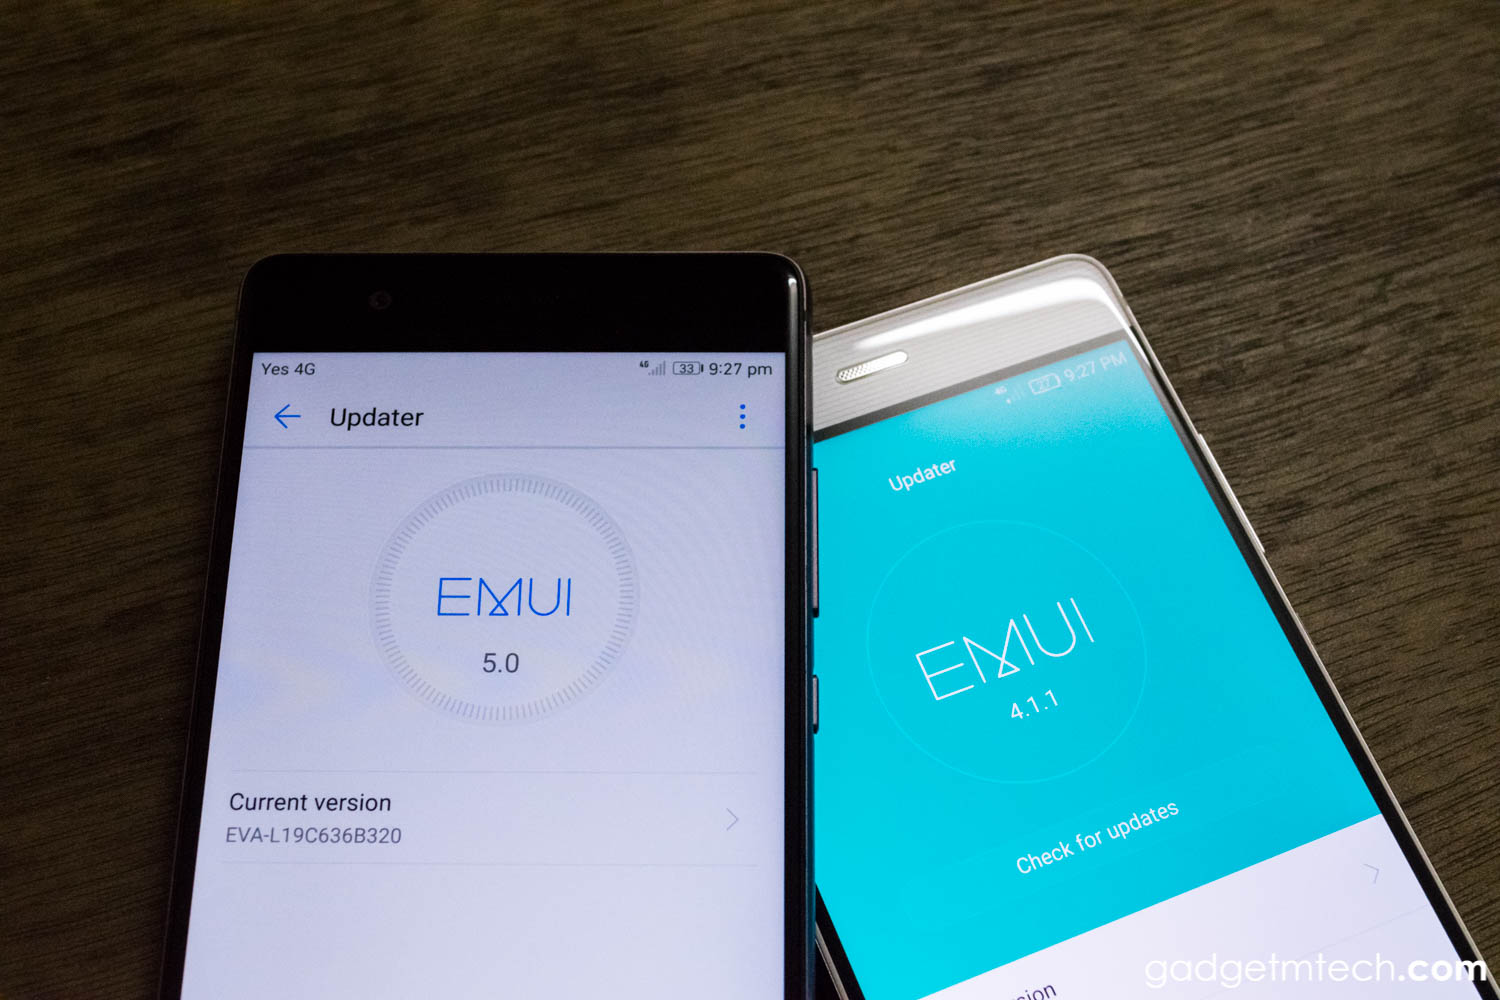 Compare & Contrast: EMUI 5.0 vs EMUI 4.1